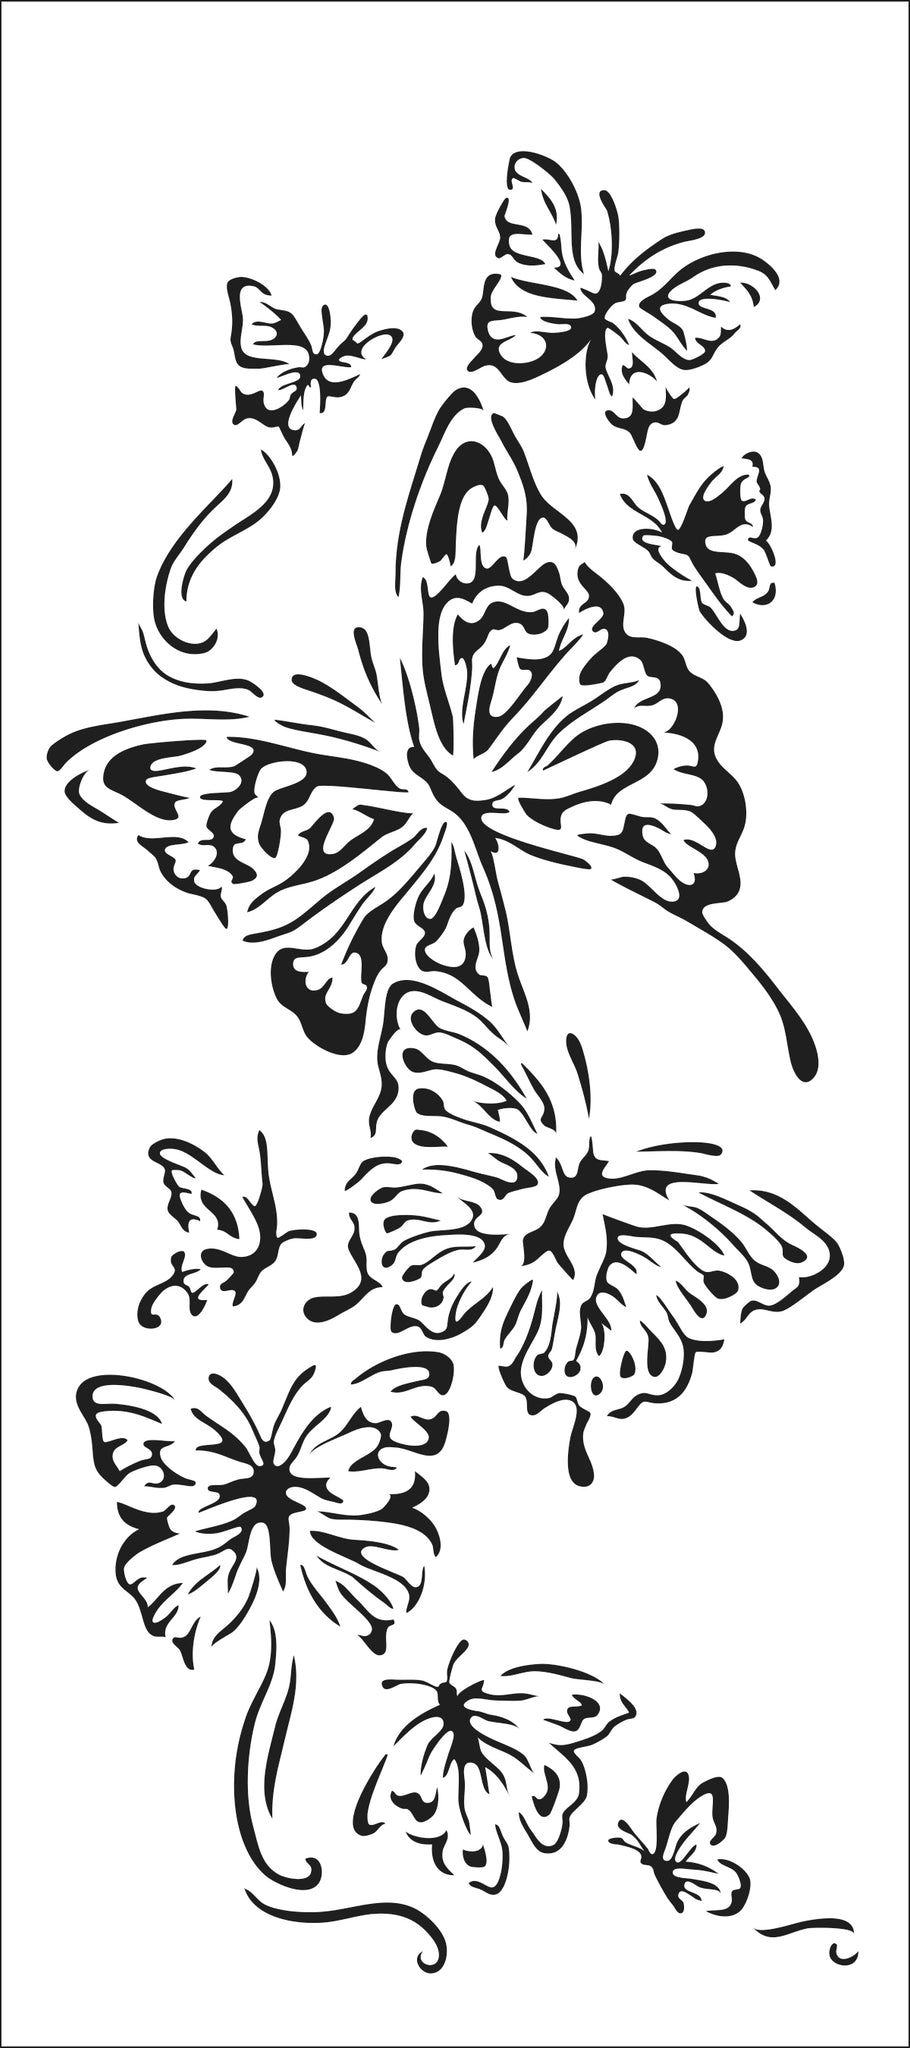 TCW2318 Flying Butterflies – TCW Stencils